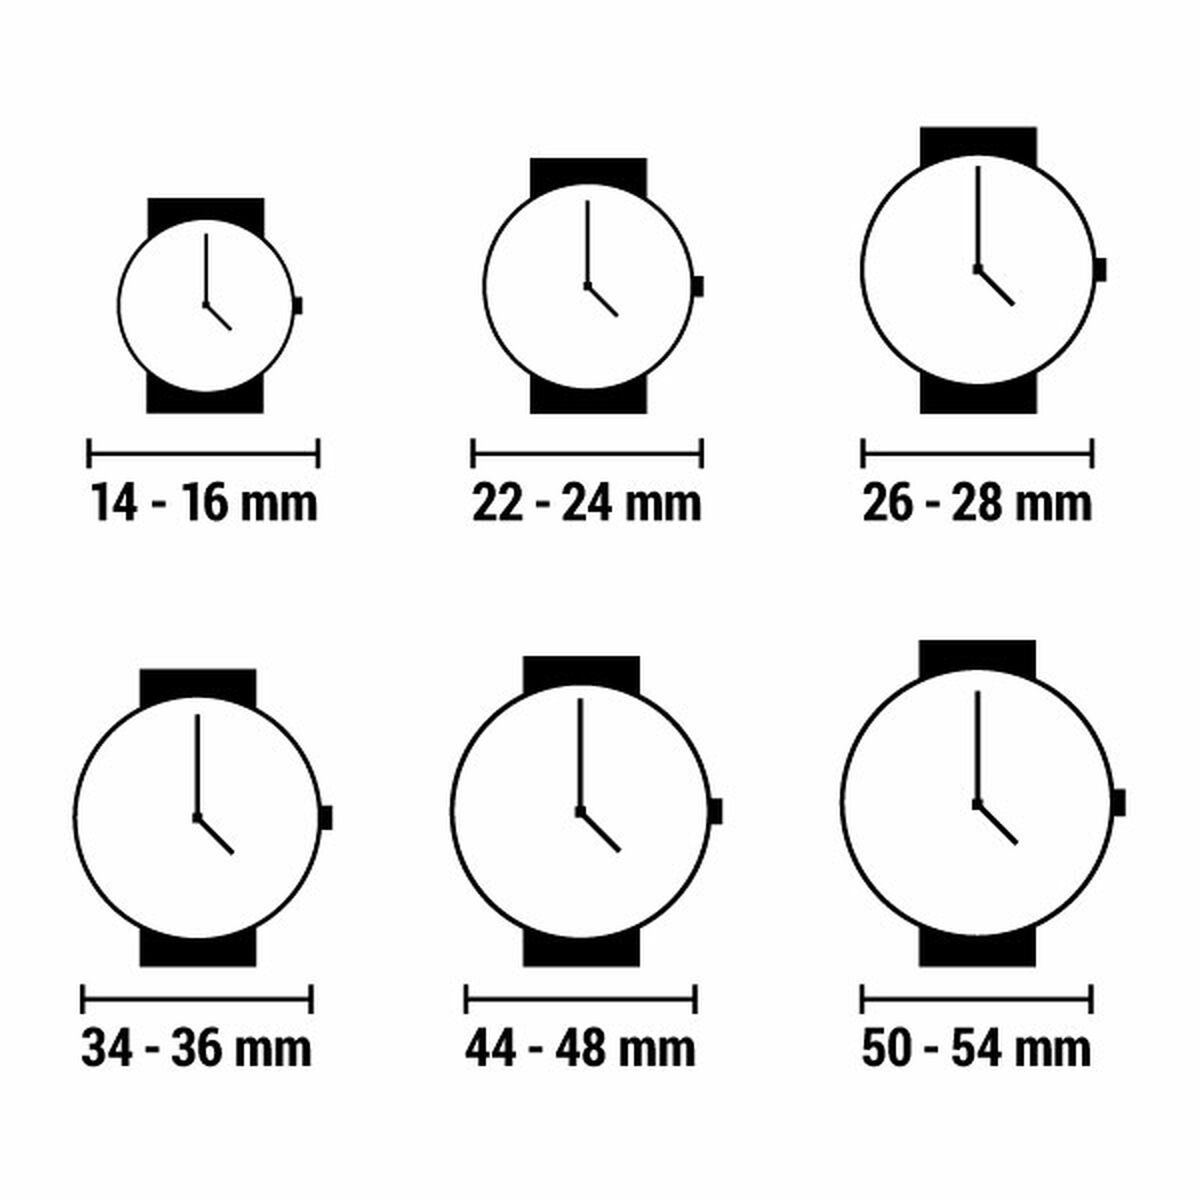 Horloge Dames Olivia Burton OB16AD51 (Ø 34 mm)